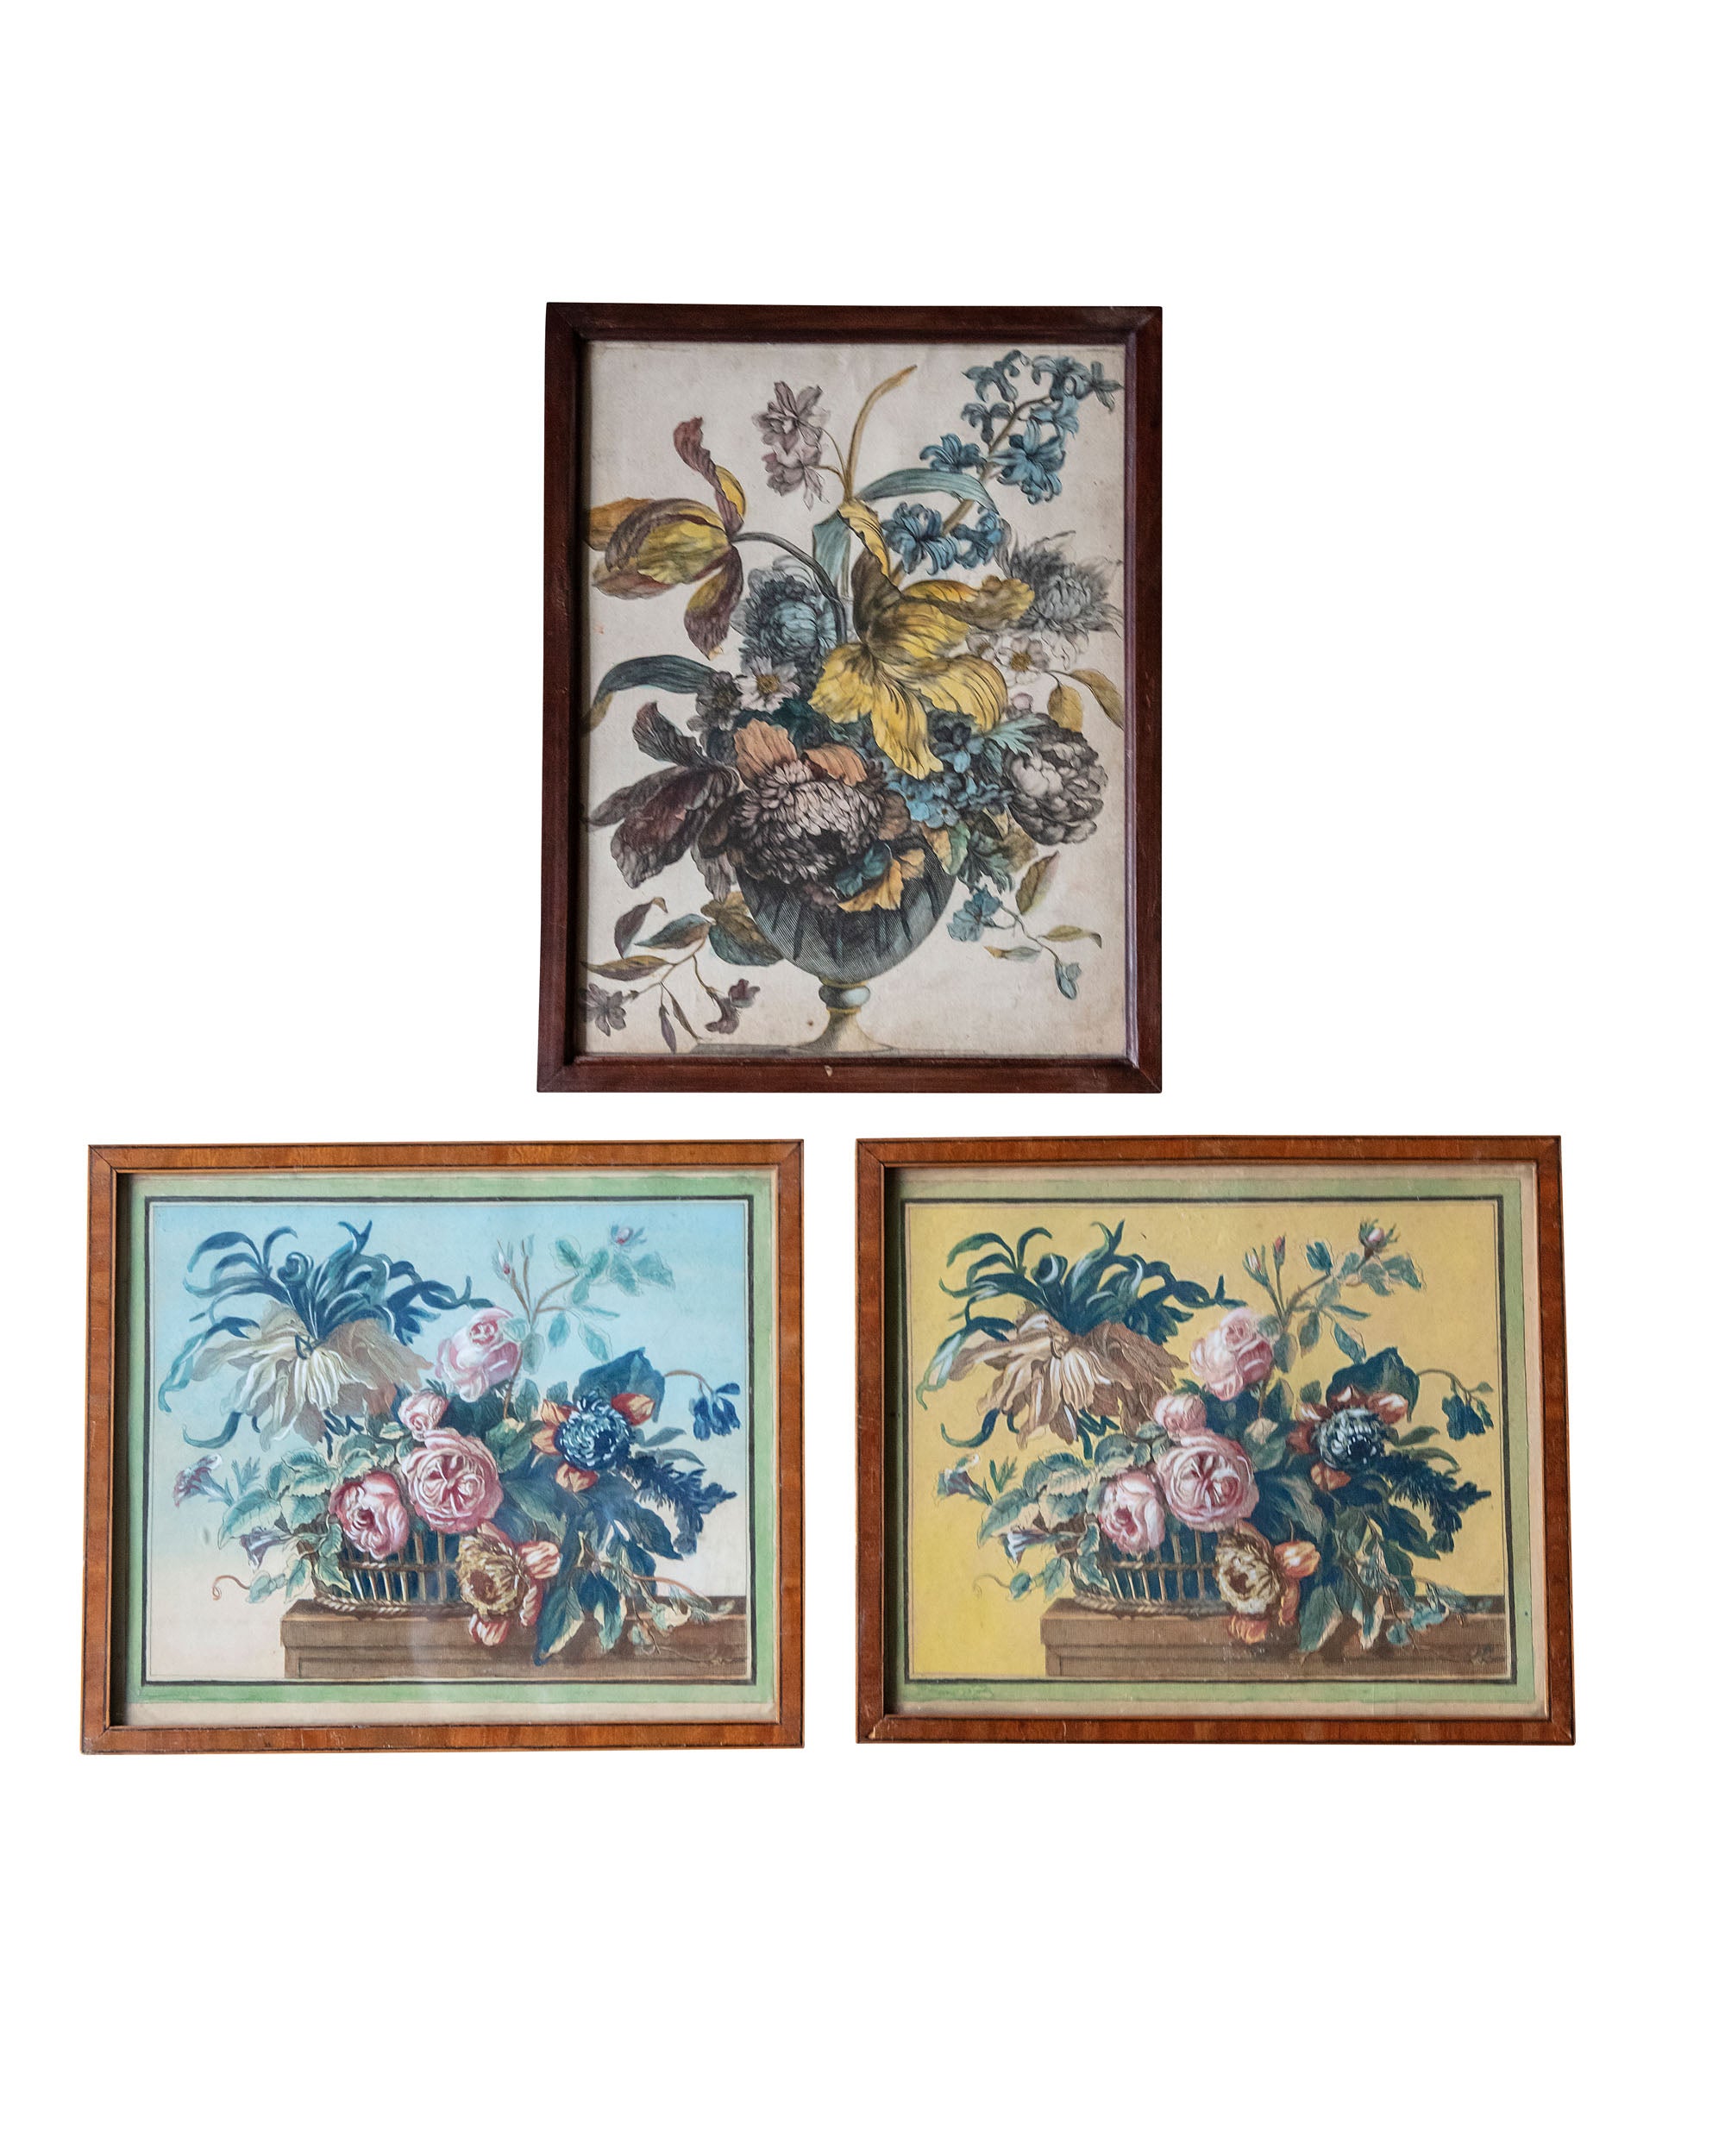 Conjunto de tres grabados de ramos de flores del siglo XVII